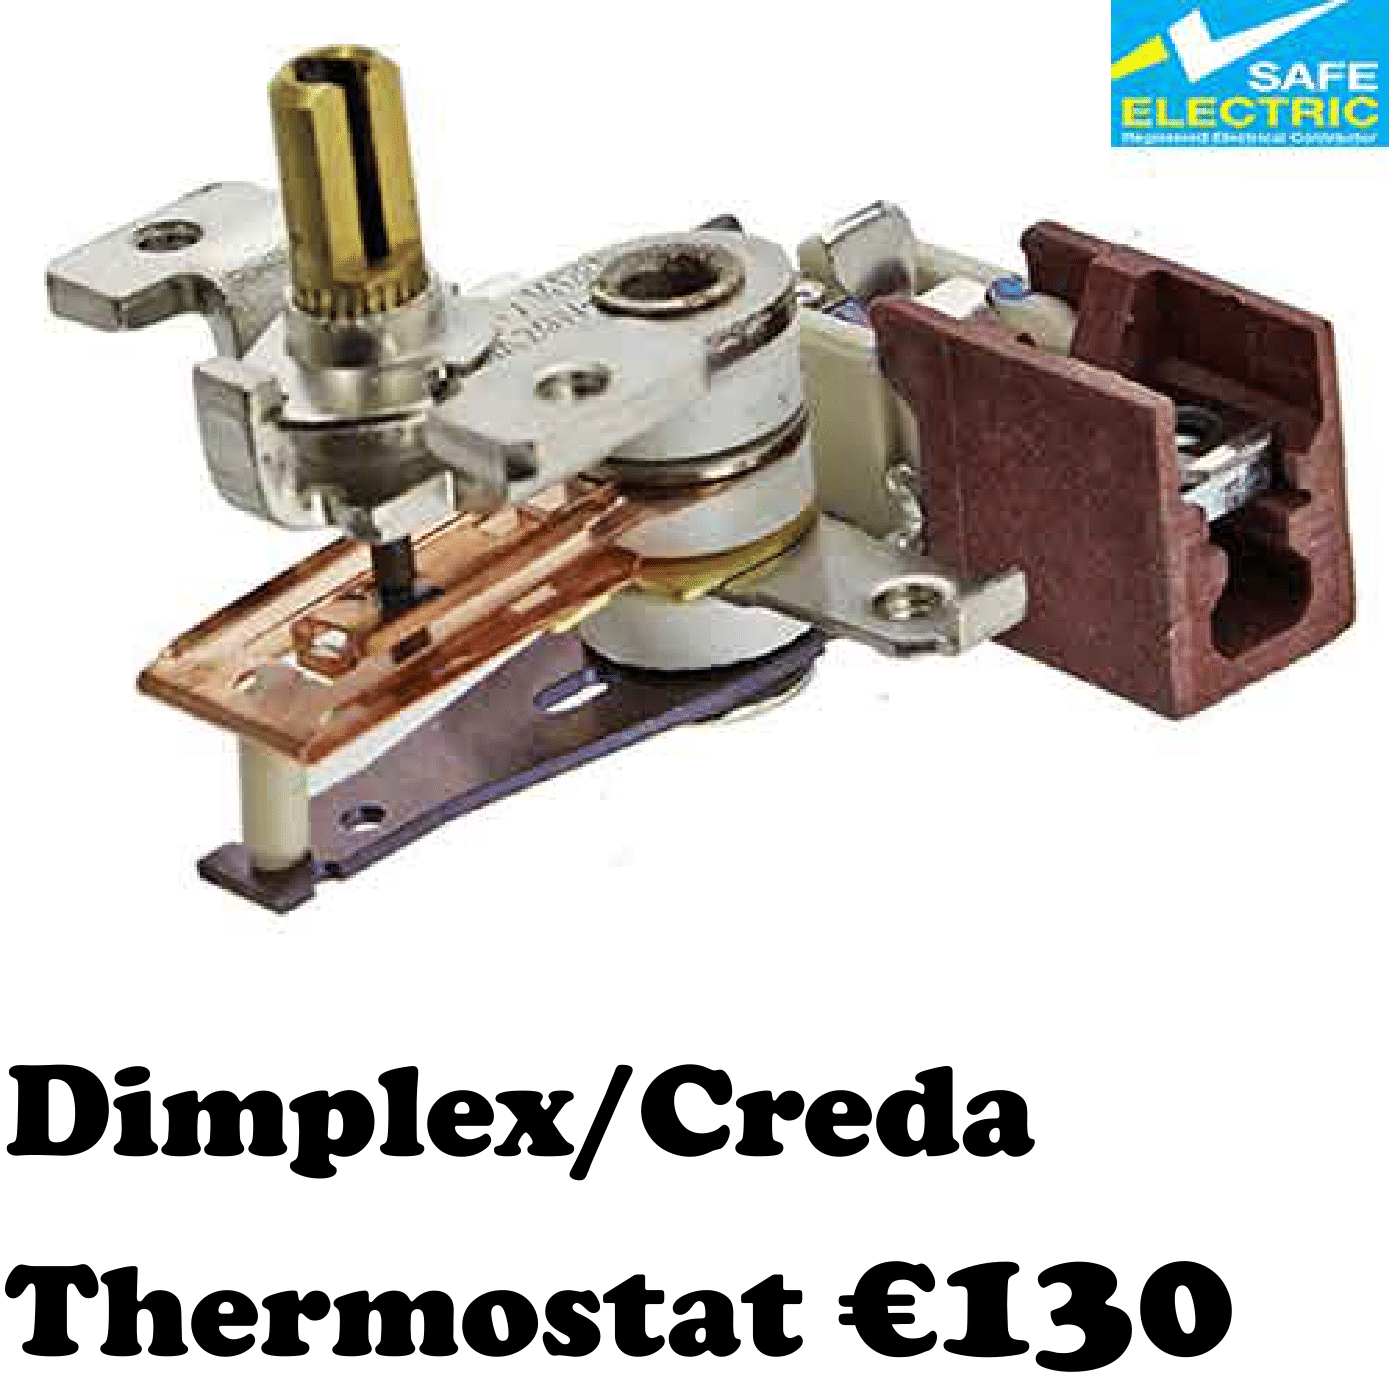 Dimplex Creda Thermostat